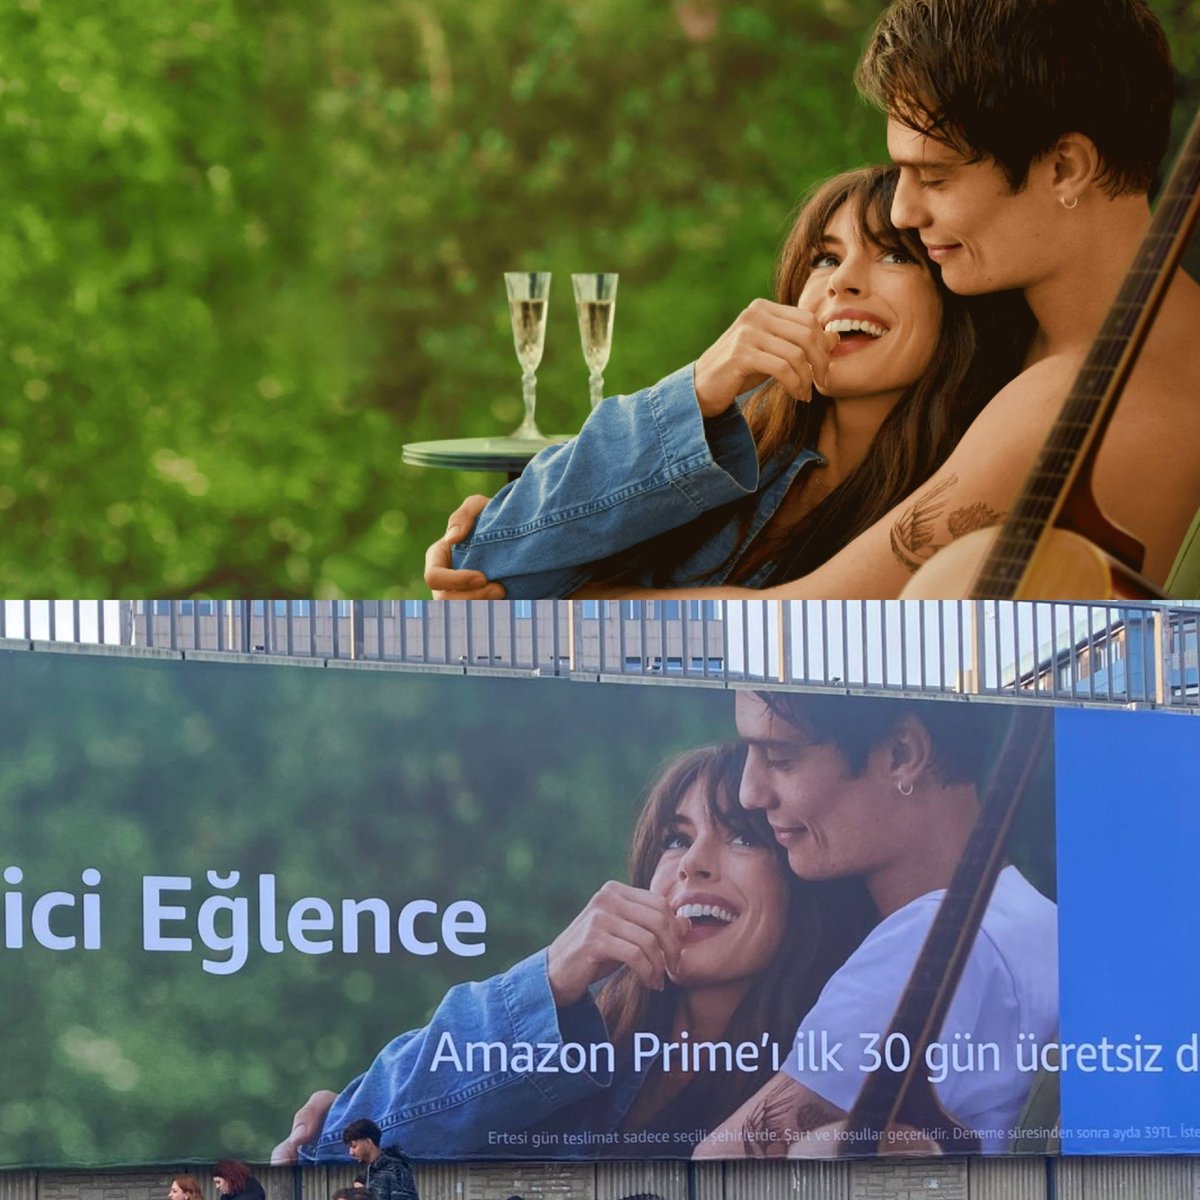 Amazon, Türkiye'de yayınladığı Amazon Prime reklam afişlerinden alkolü kaldırdı ve fotoğraftaki erkeğe tişört giydirdi.